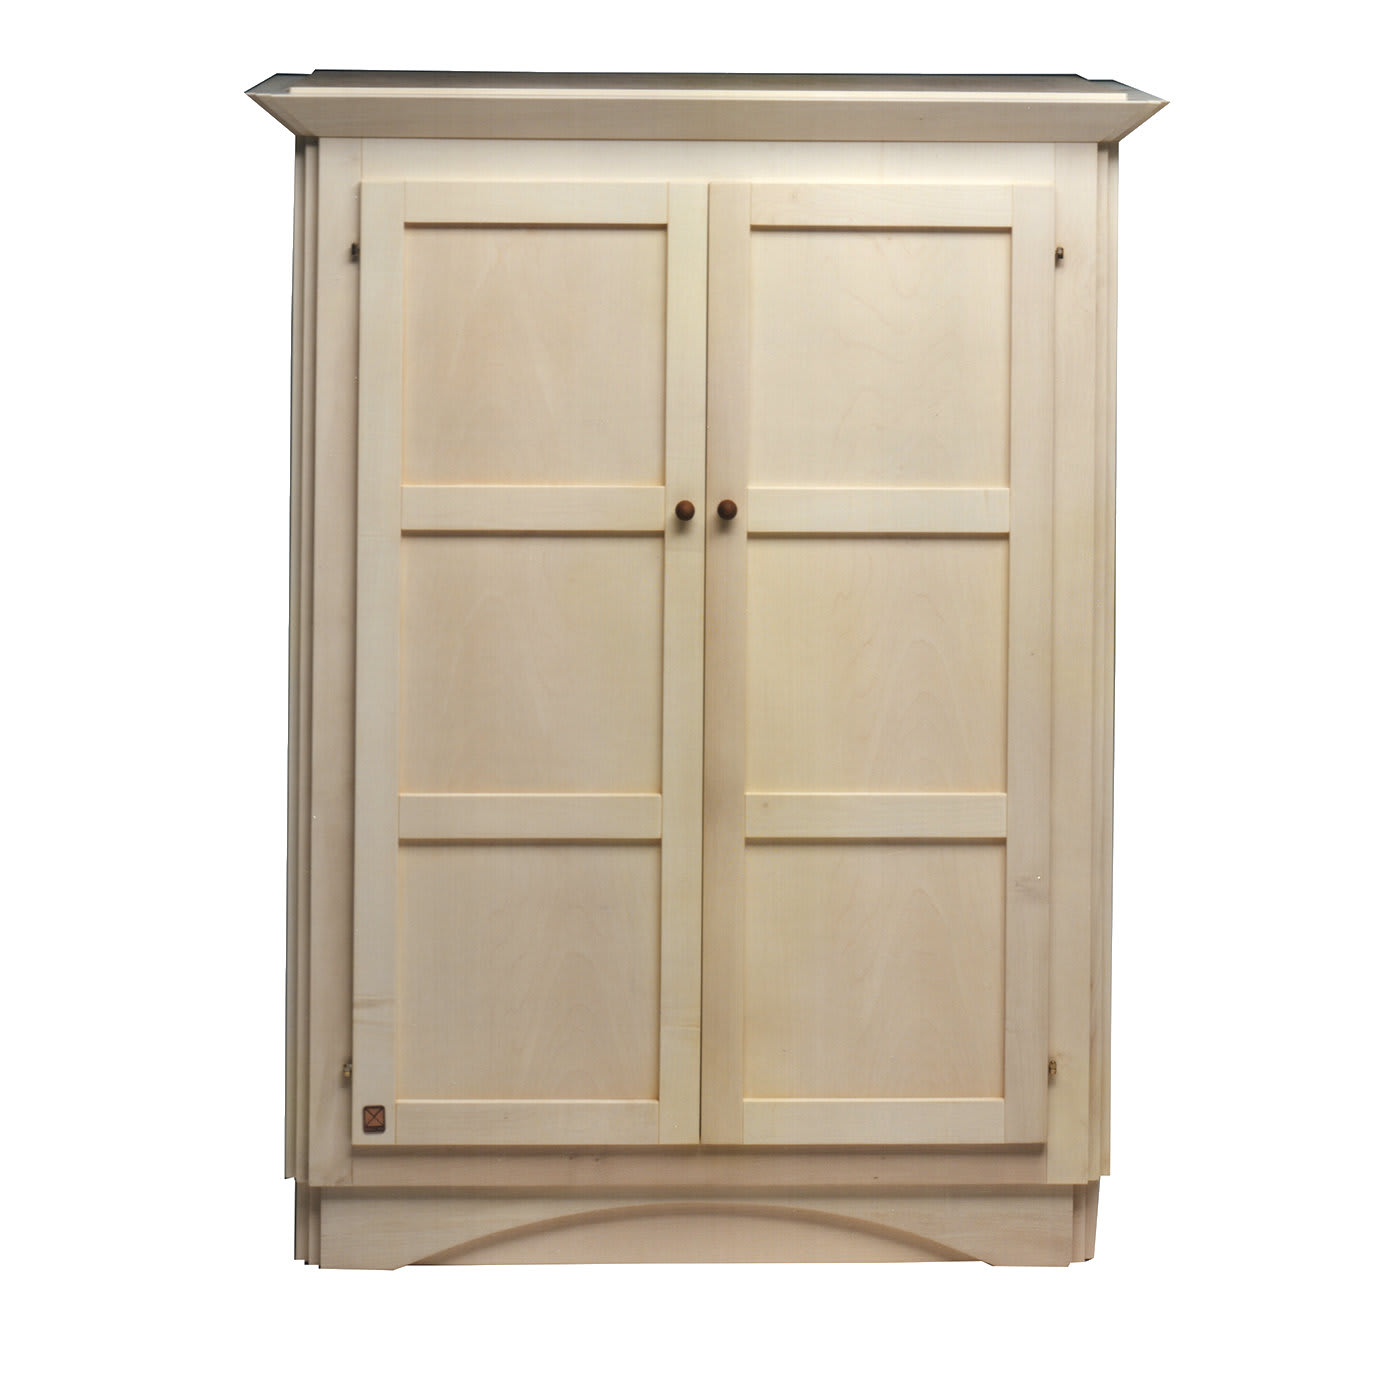 Lacunare Piccola Cabinet - Meccani Design